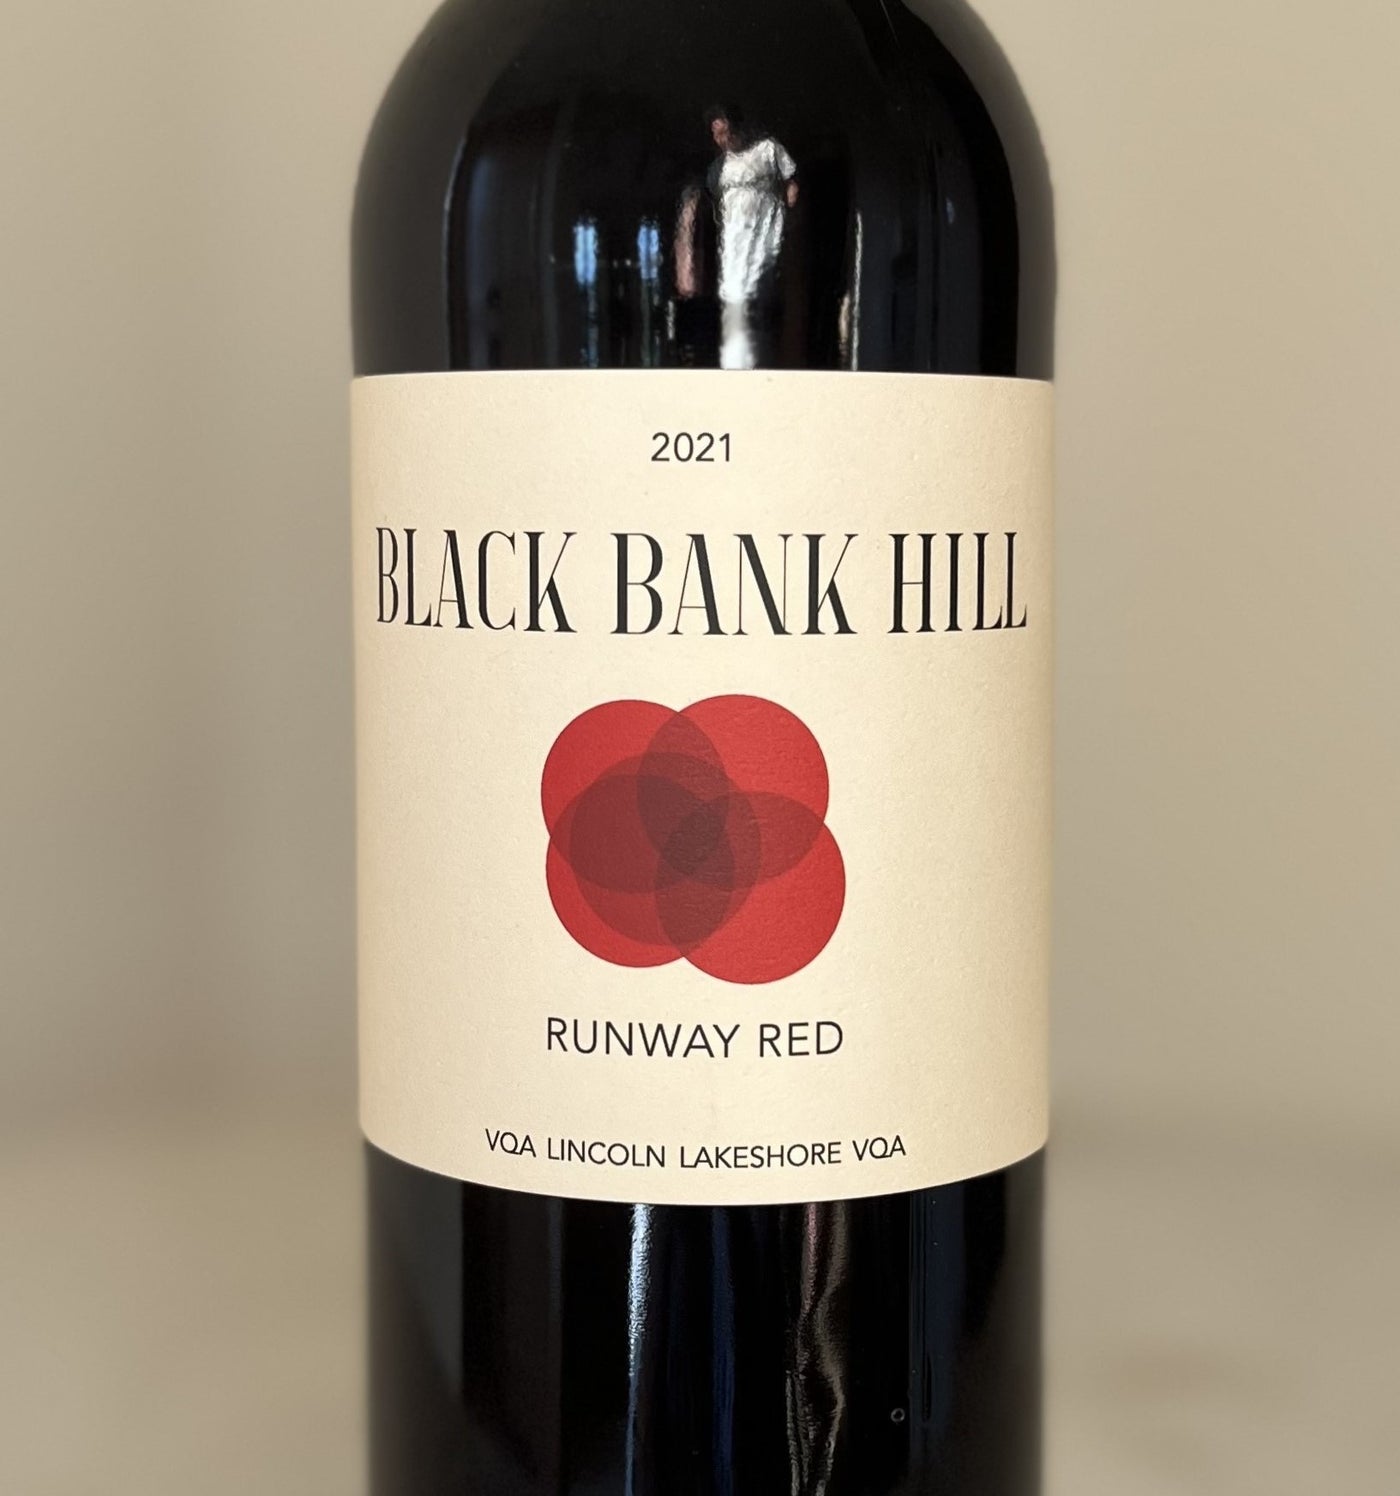 Black Bank Hill 2021 Runway Red, Lincoln Lakeshore VQA